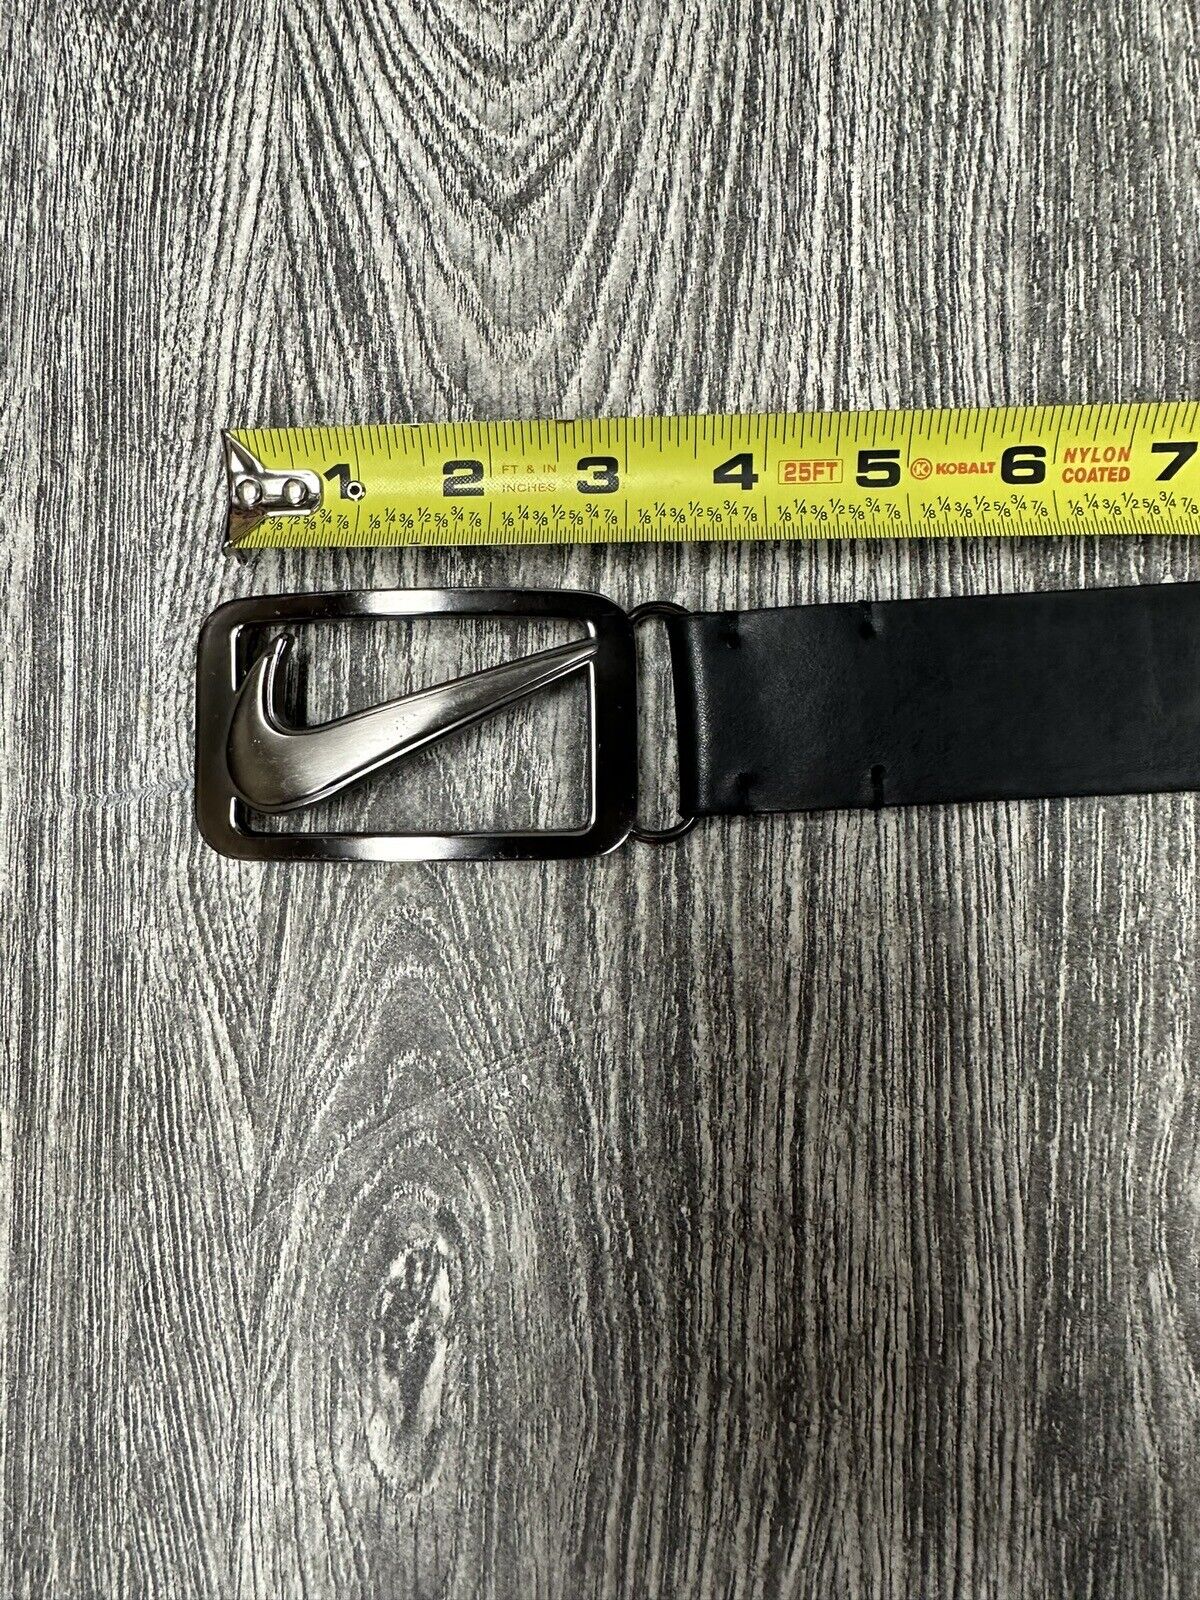 Nike Golf black leather belt size 40 - image 2